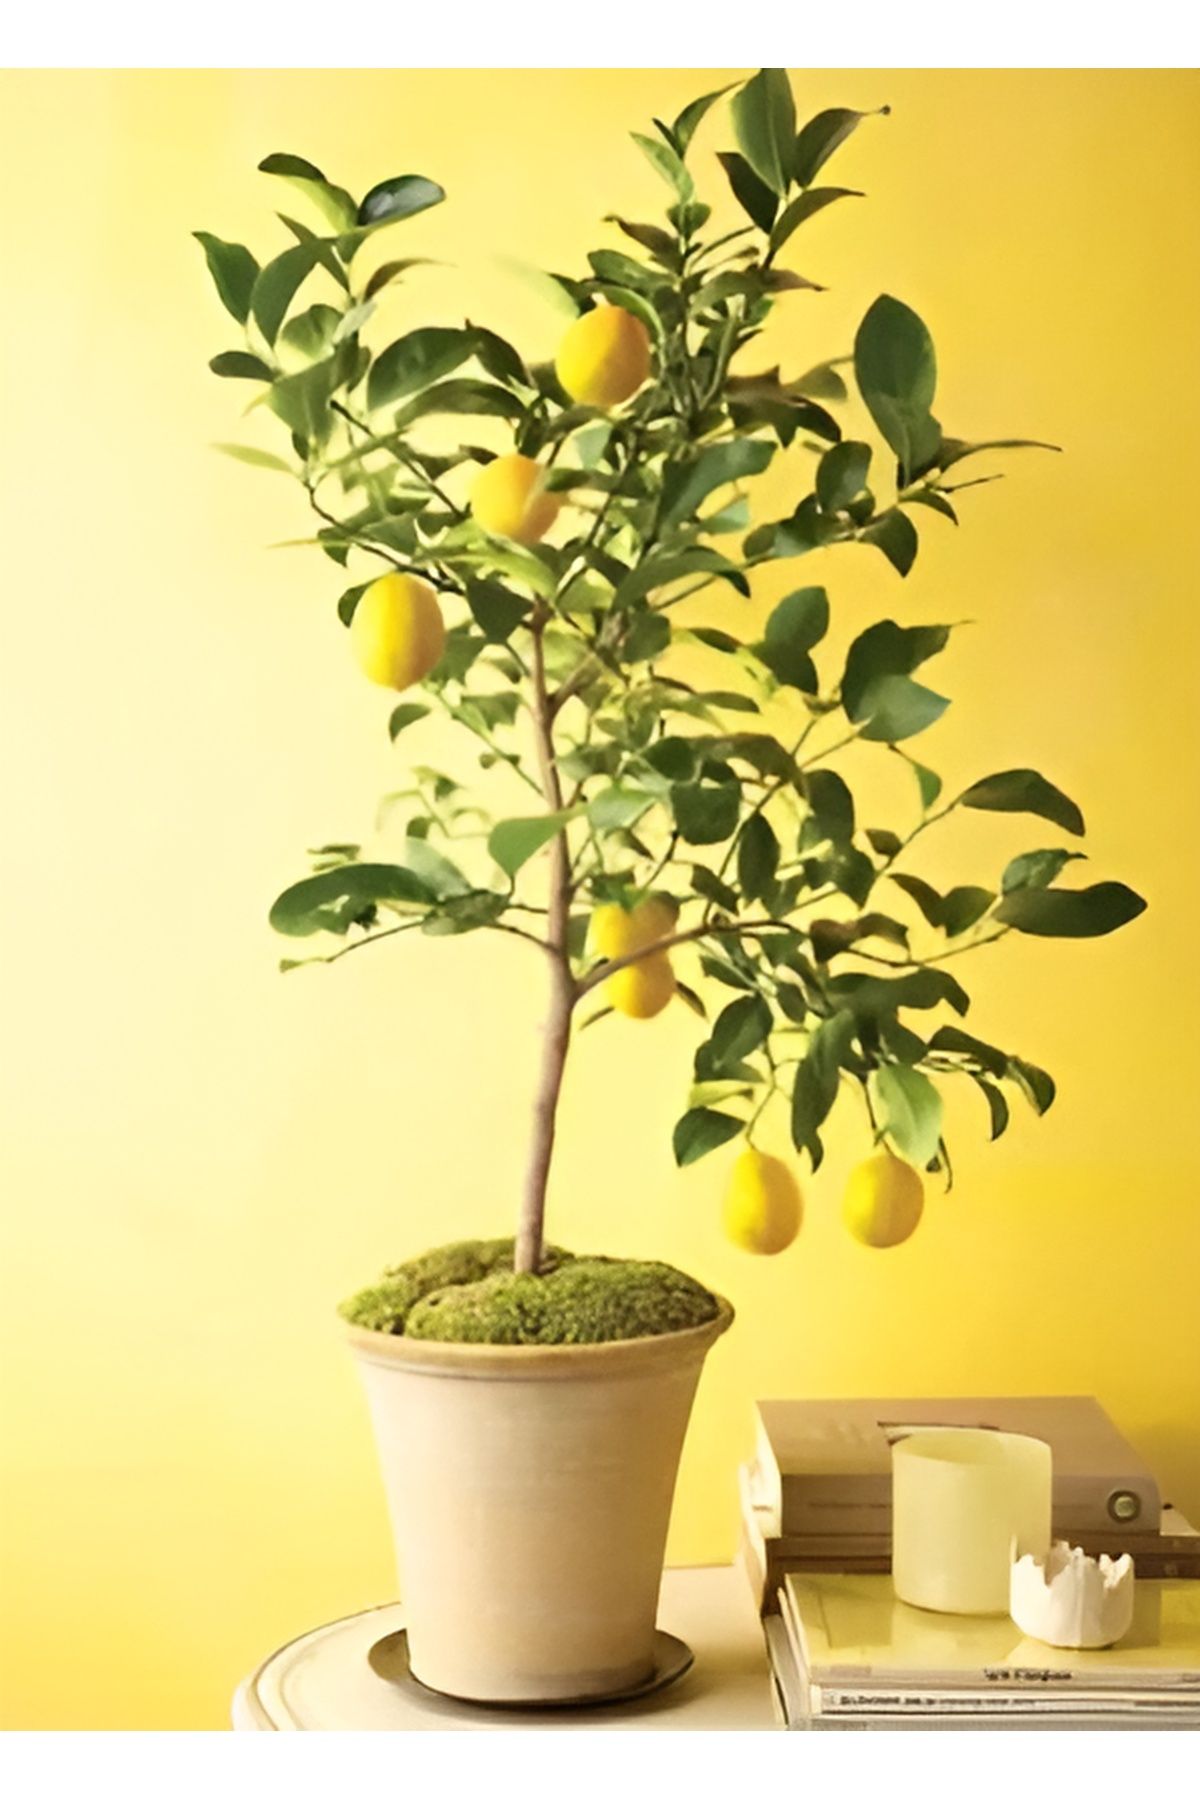 EVİM BAHÇEM Limon Fidanı Aşılı Yediveren Mayer Bodur Limon Fidanı (MEYVELİ) 2-3 yaş Limon Ağacı Fidanı